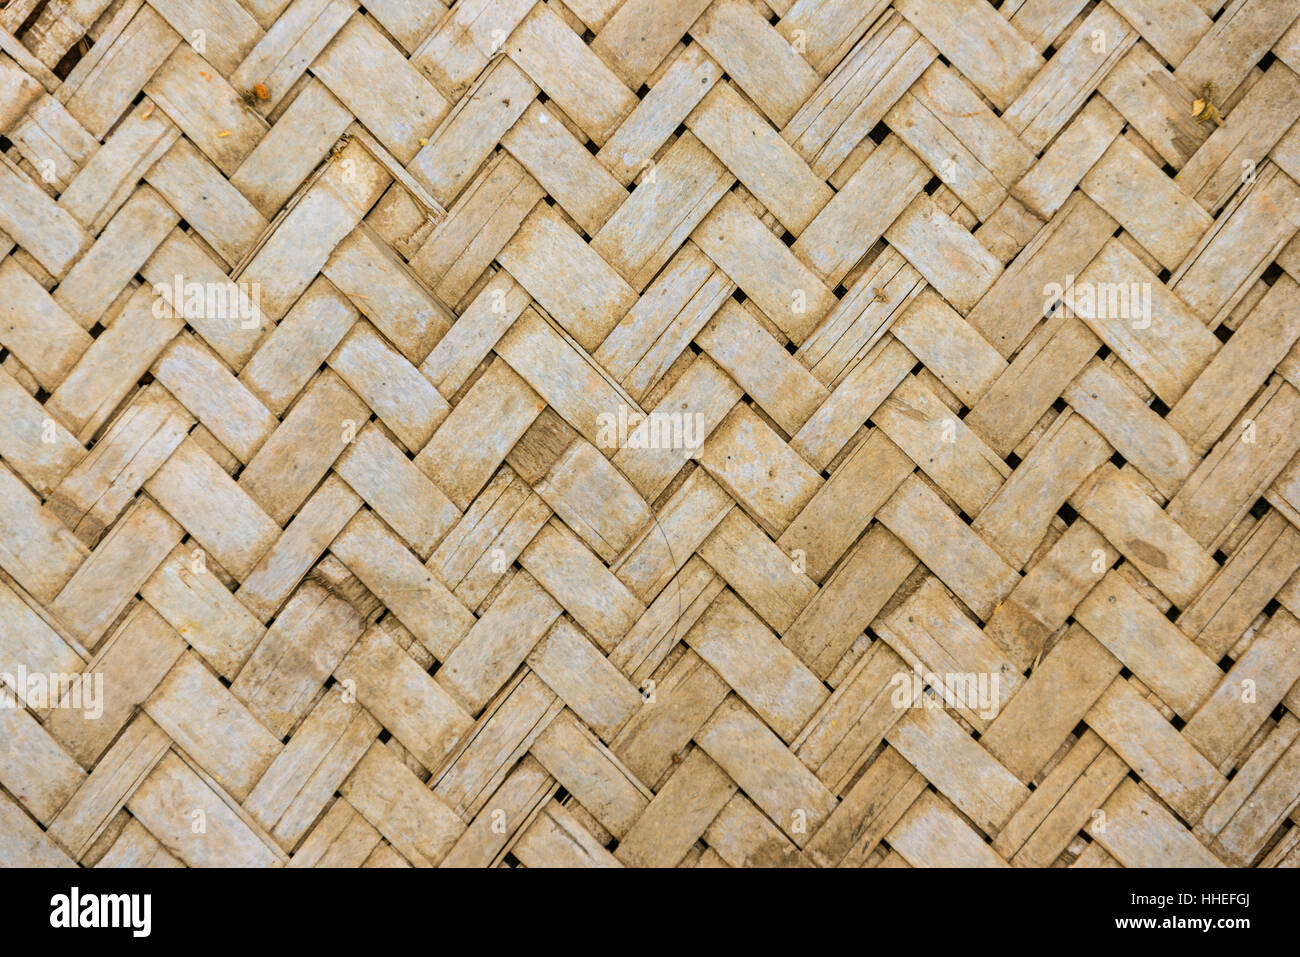 Braided bamboo immagini e fotografie stock ad alta risoluzione - Alamy